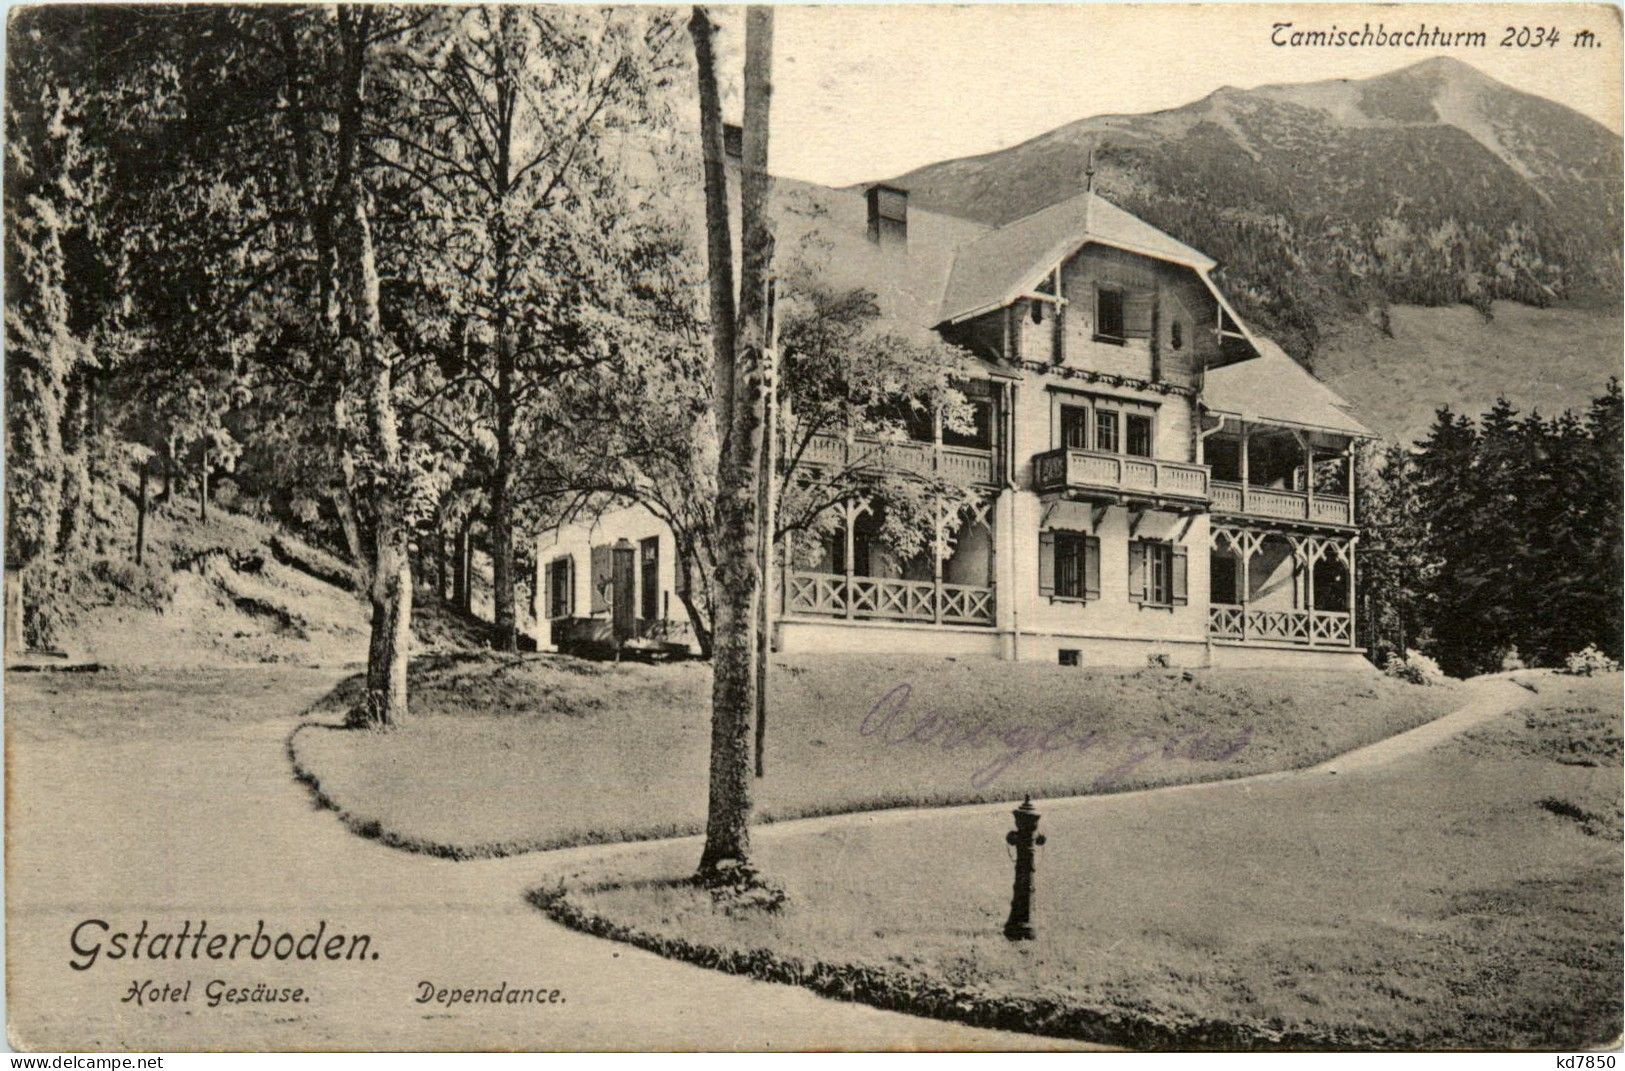 Admont/Gesäuse/Steiermark Und Umgebung - Gstatterboden, Hotel Gesäuse, Dependance, Tamischbachturm - Gesäuse